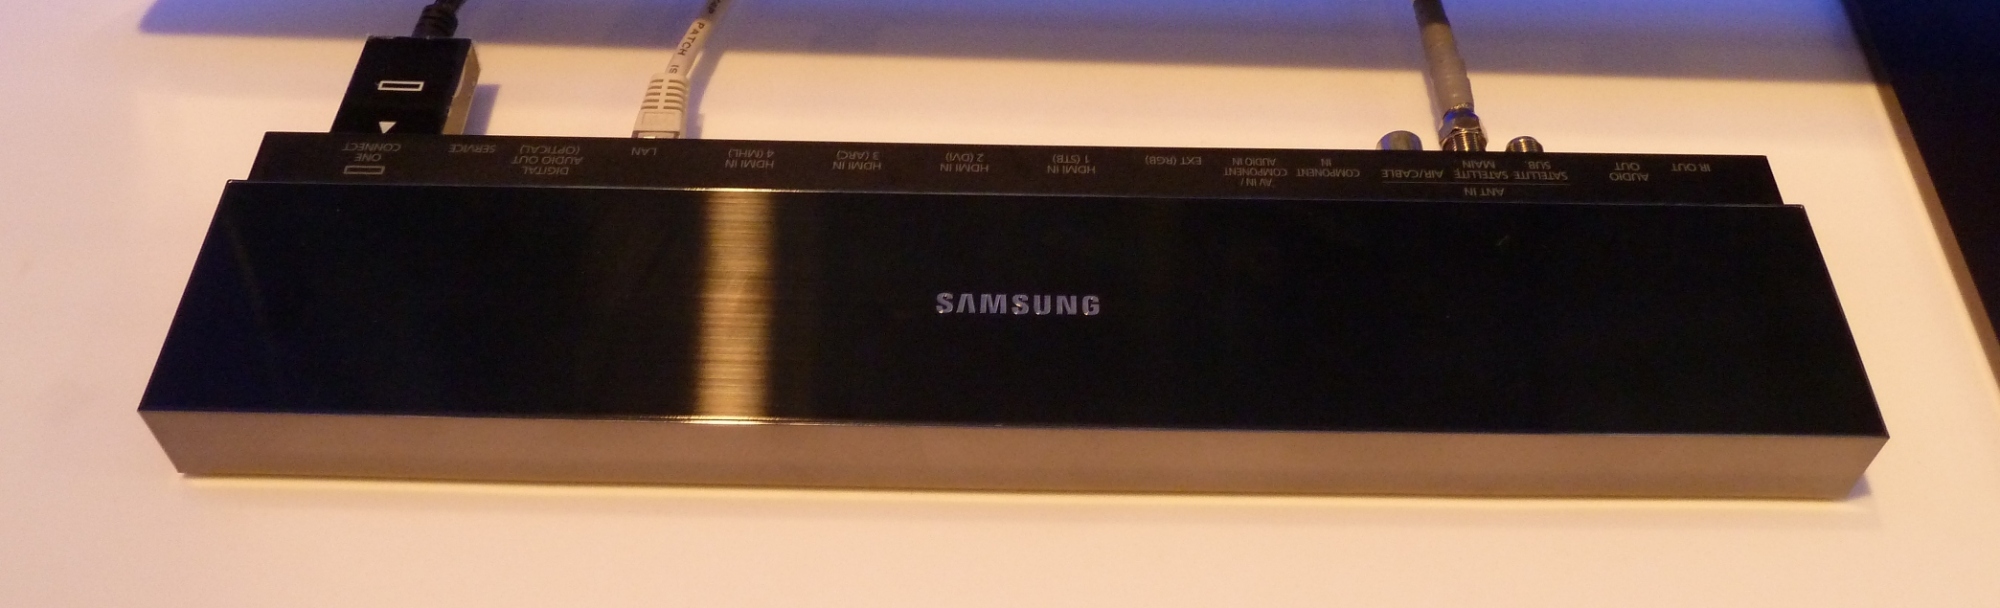 Samsung UHD-TVs: Zukunftssicher dank One-Connect-Box | heise online